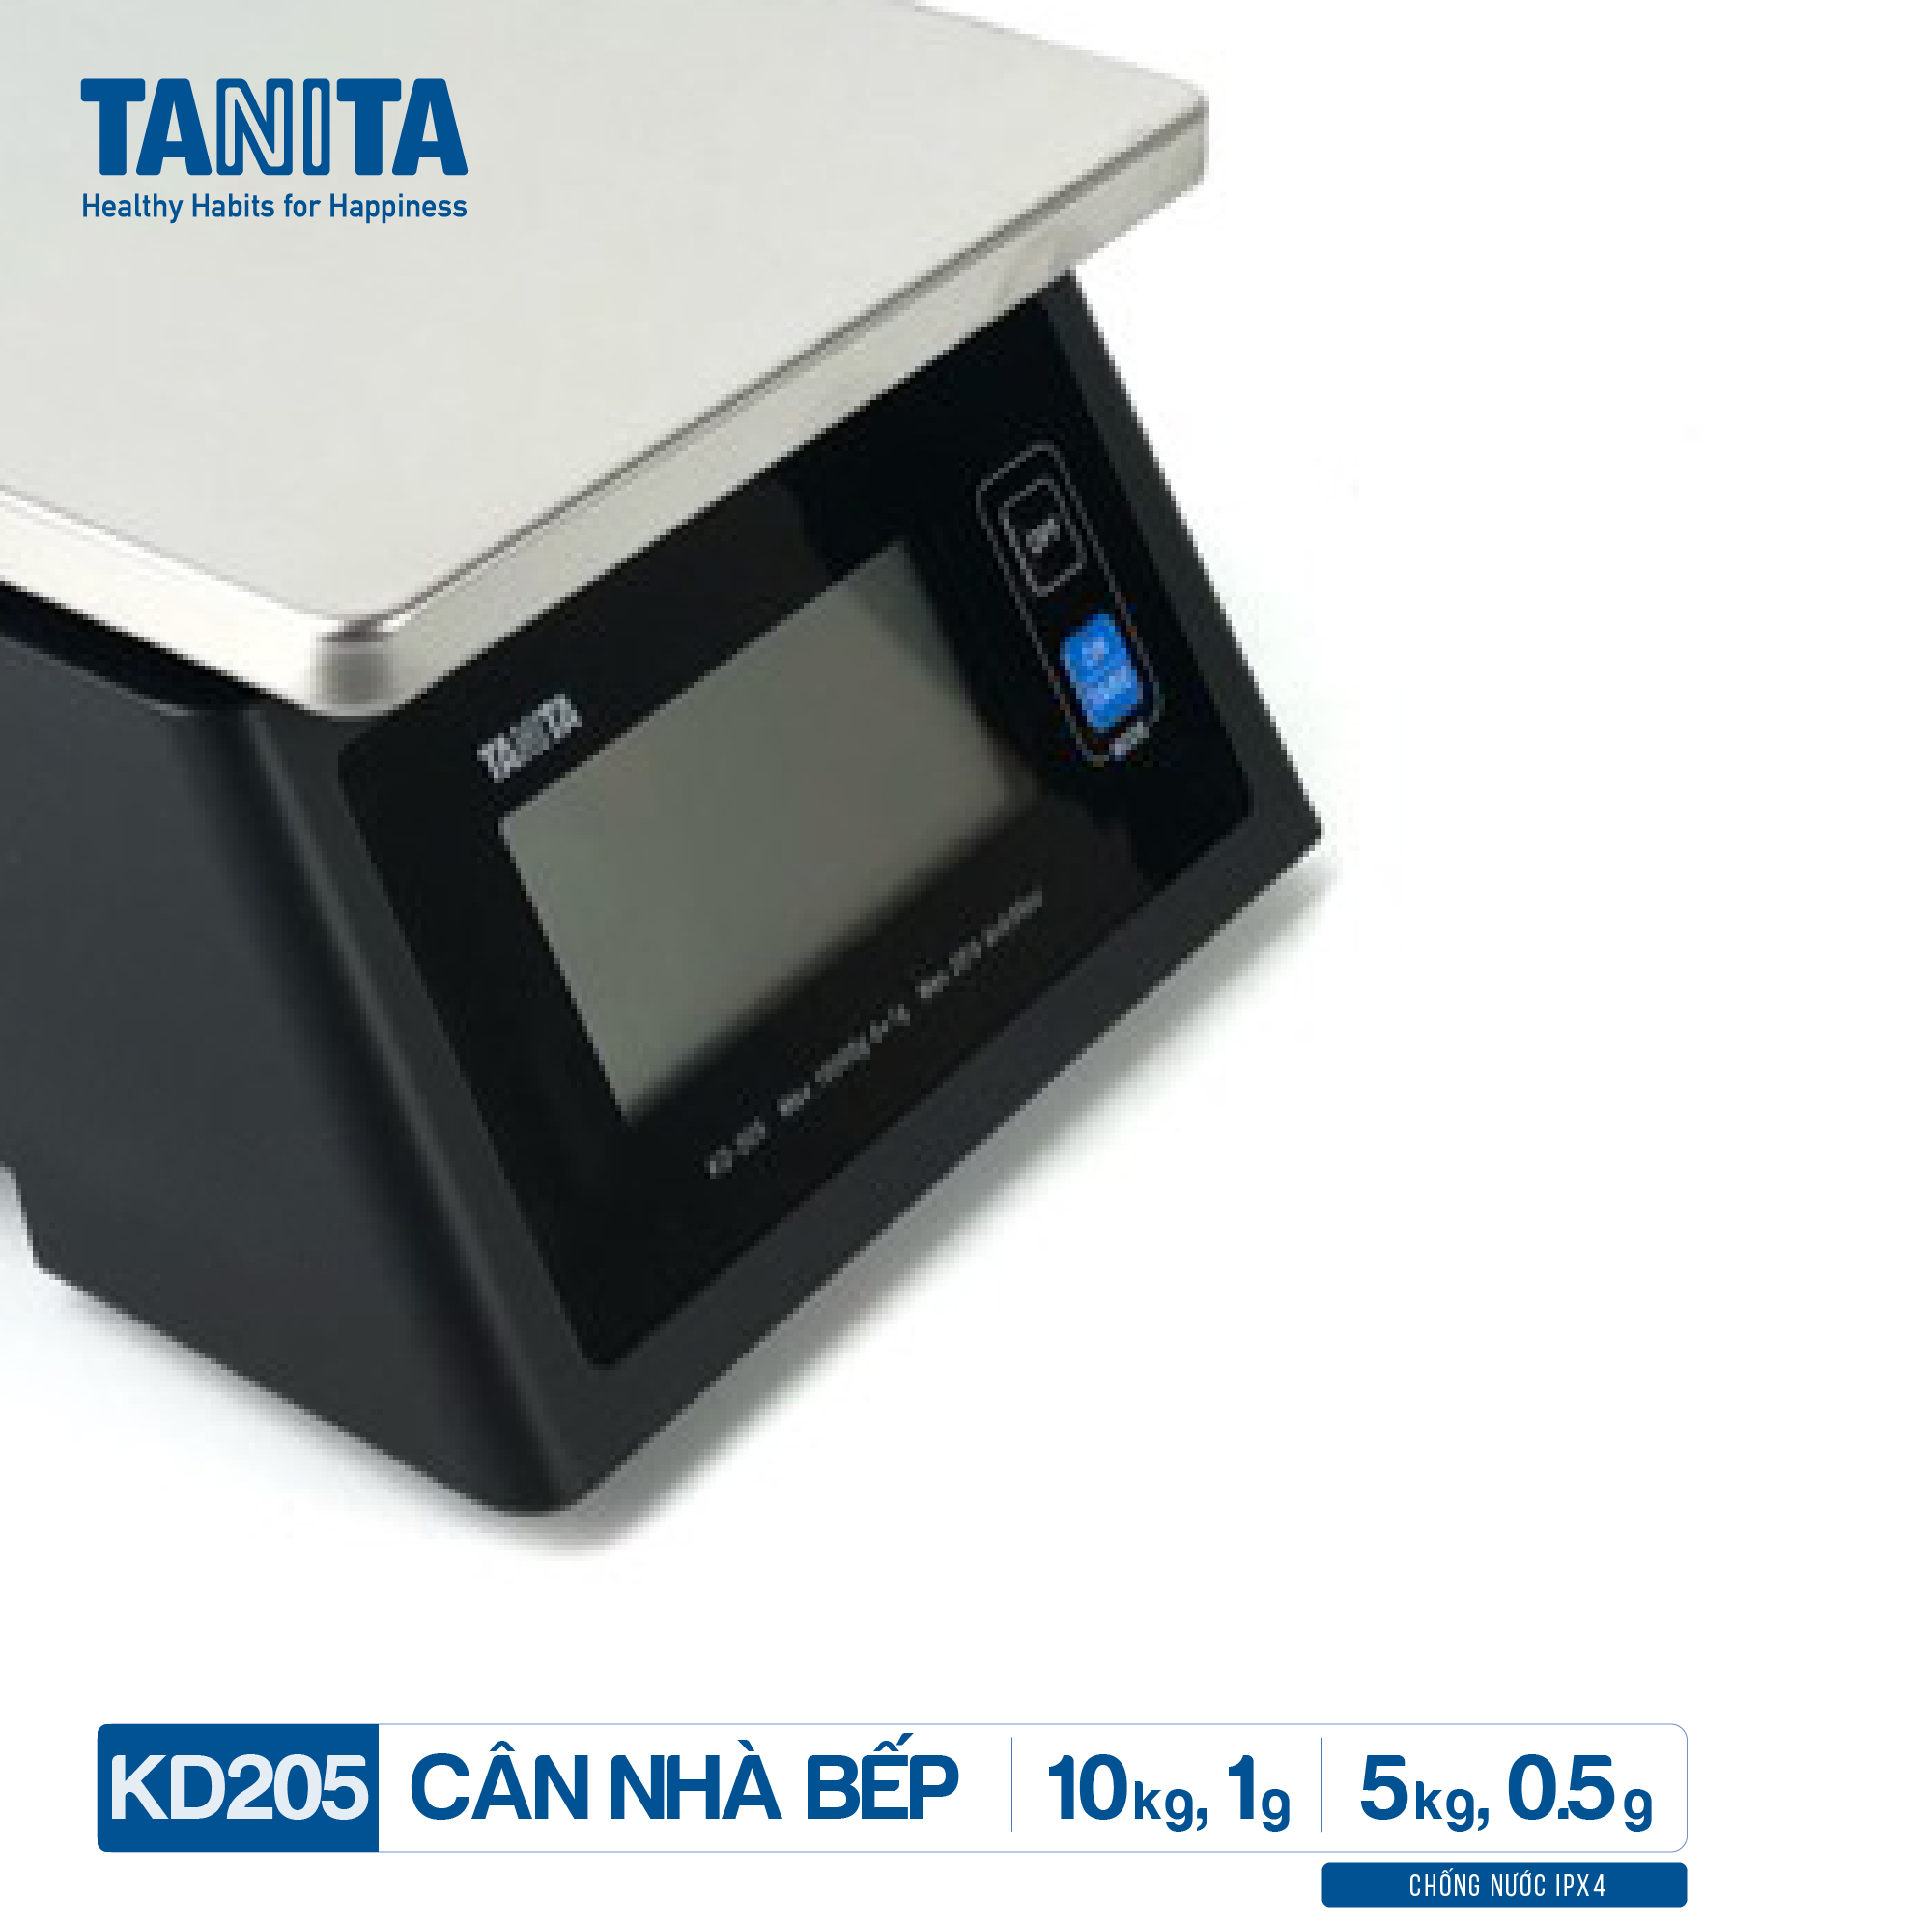 Cân tiểu ly điện tử nhà bếp chống nước IPX4 TANITA KD205,Chính hãng nhật bản (10kg-0.5g)có trừ bì,bền đẹp,chính xác,sử dụng làm bánh,cân tổ yến,cân hải sản và y học,tặng kèm pin